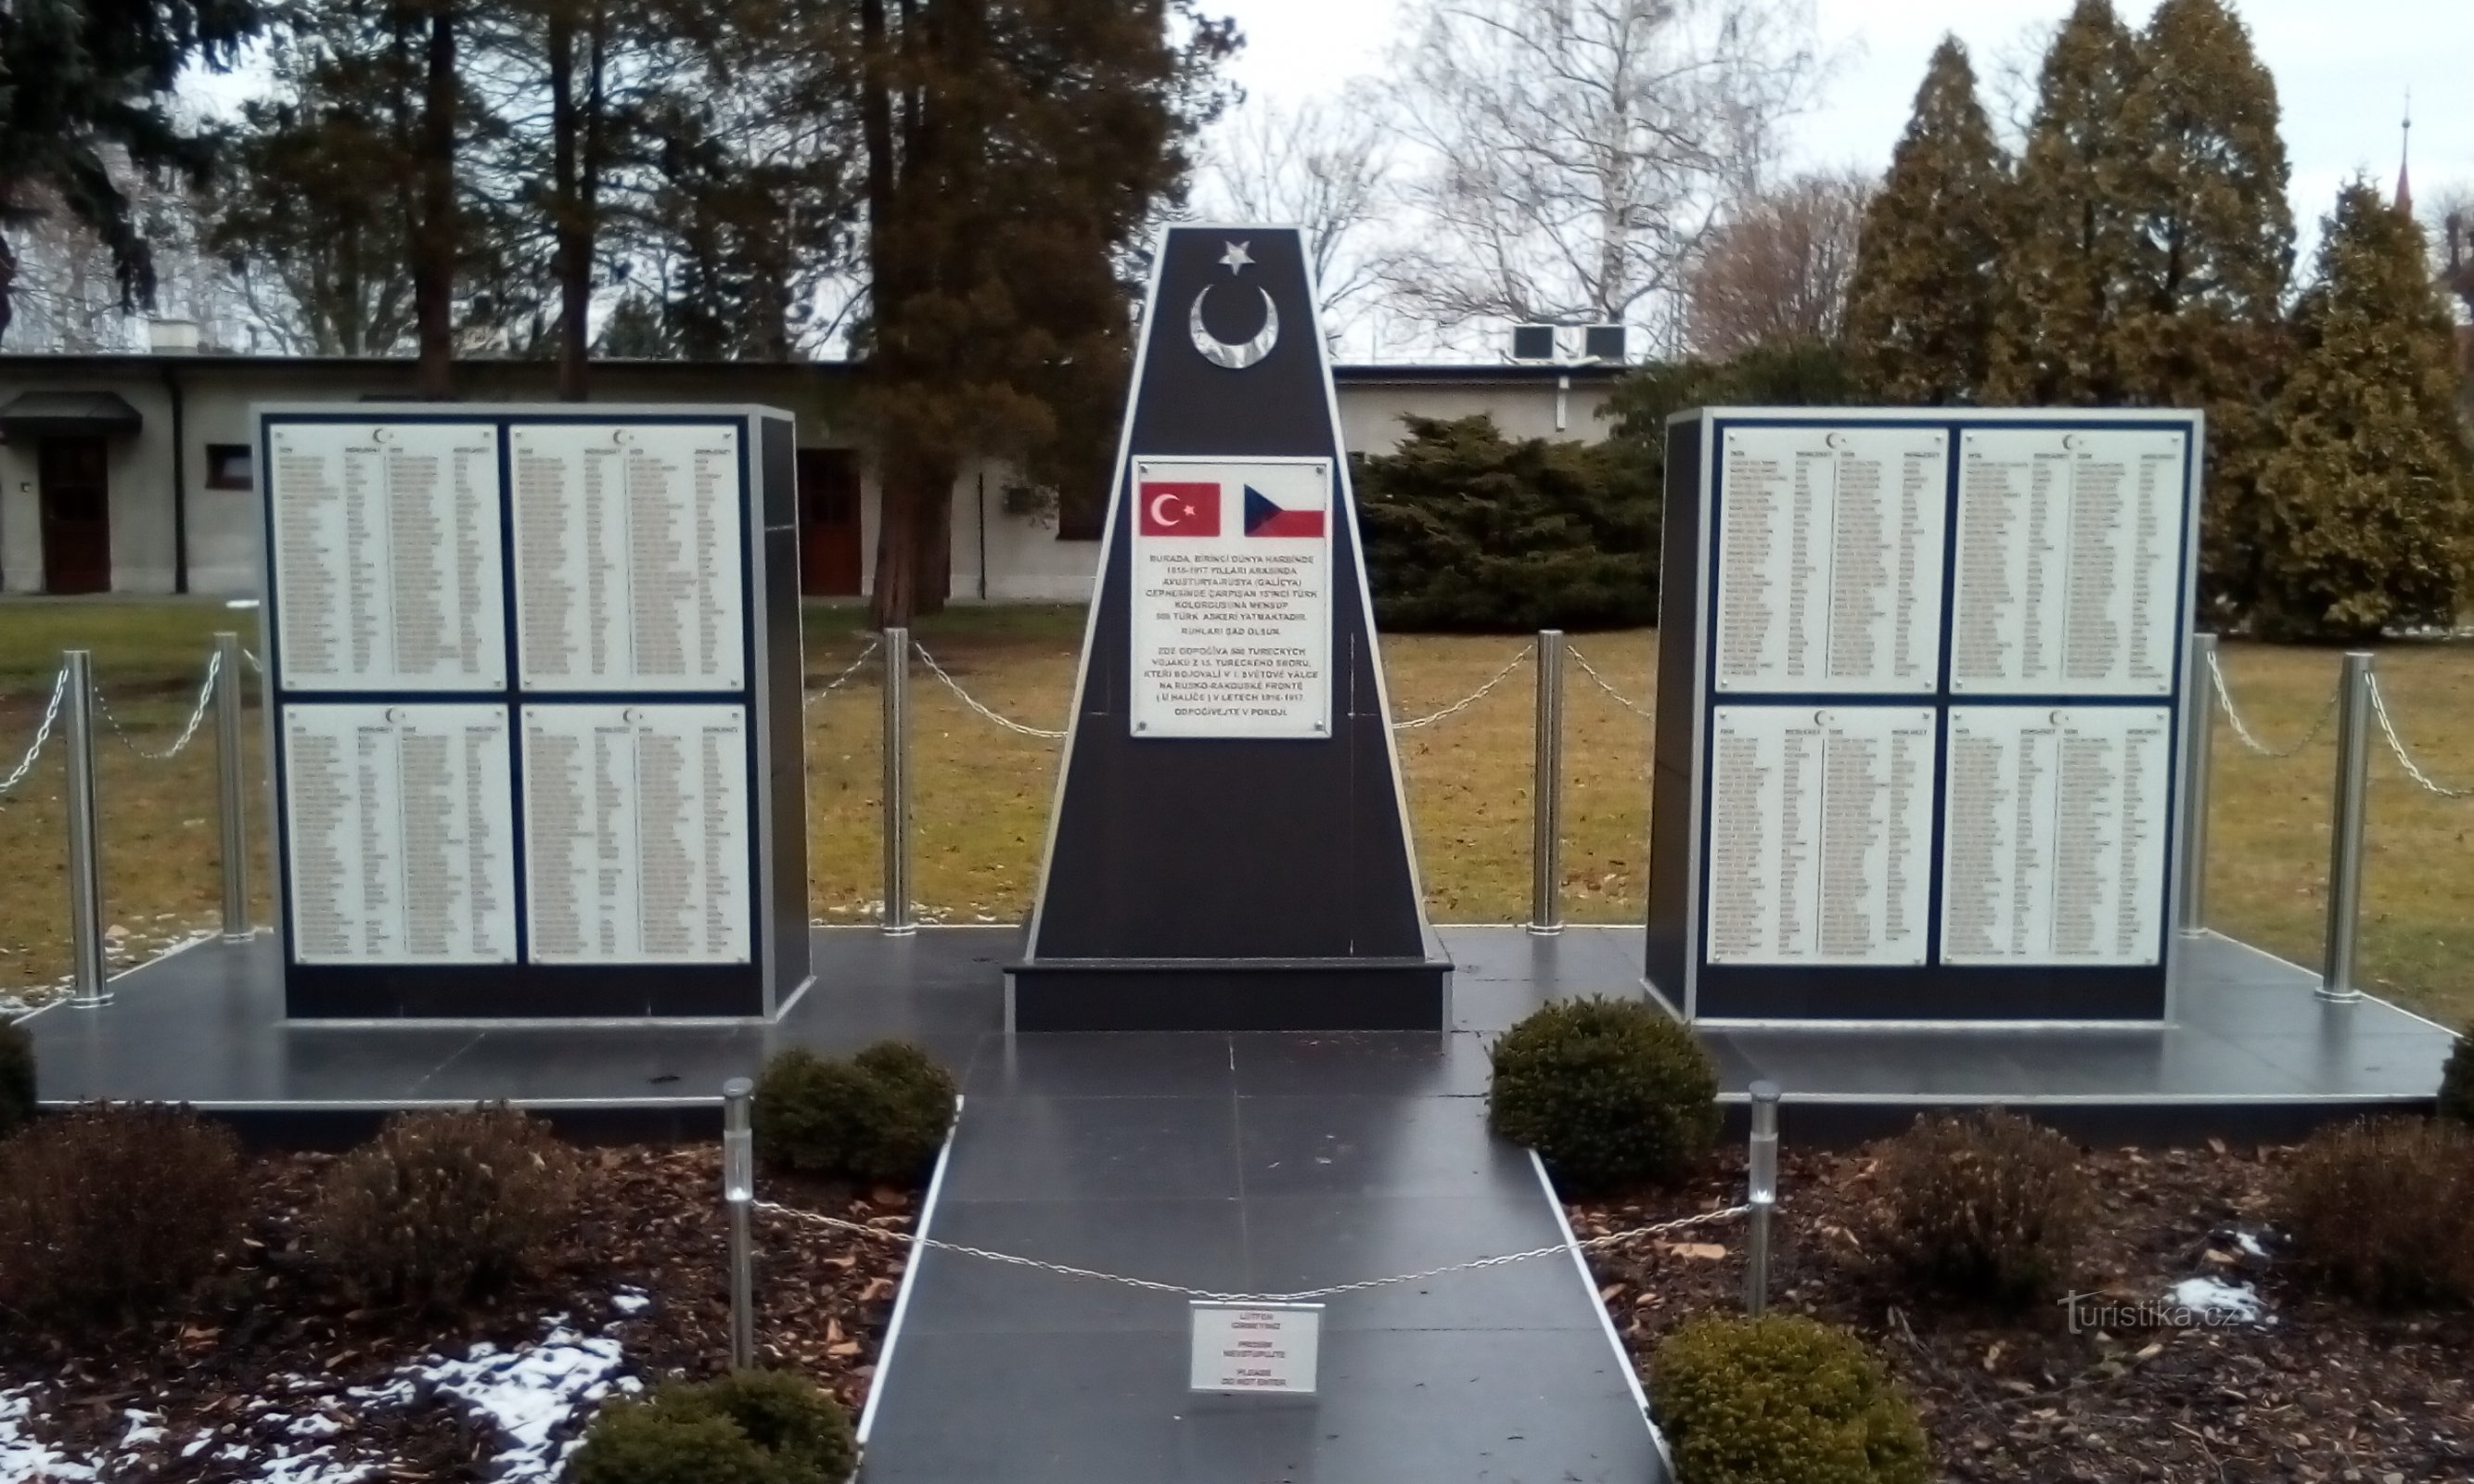 Đài tưởng niệm những người lính Thổ Nhĩ Kỳ đã hy sinh trong Thế chiến thứ nhất